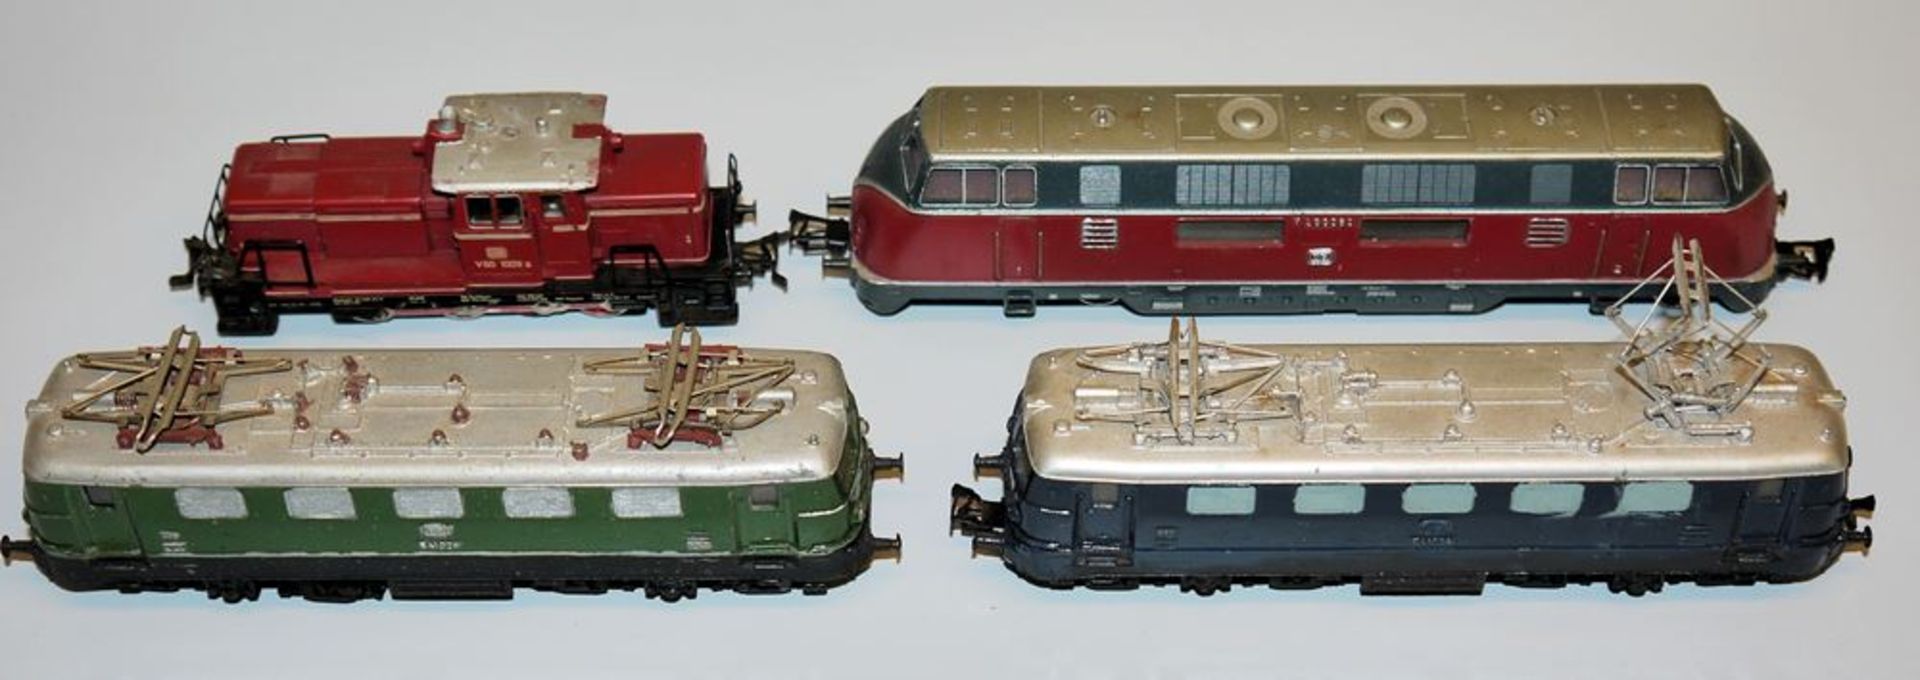 Vier Loks der Firma Märklin, Eisenbahn Modelle 3065, 3021, 2x 3034